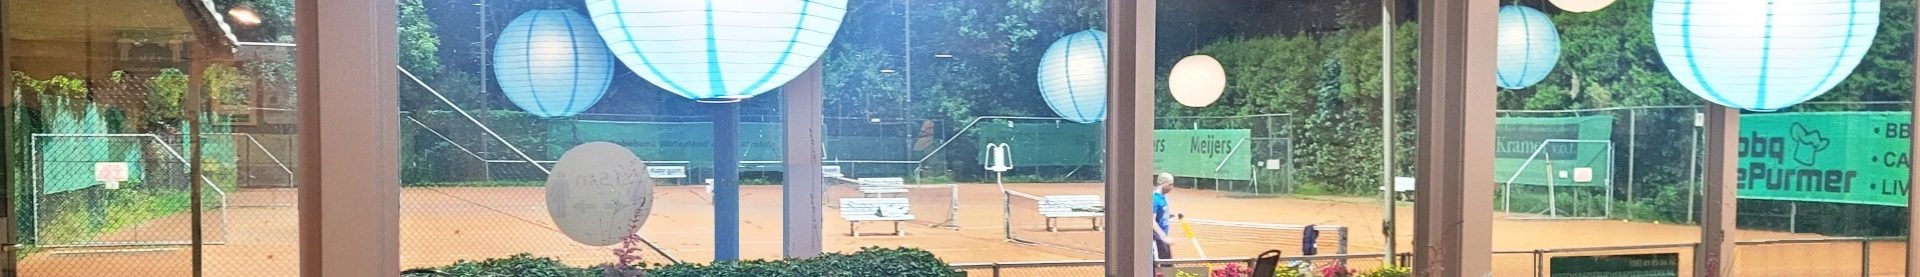 Corona-update: tennis blijft mogelijk!